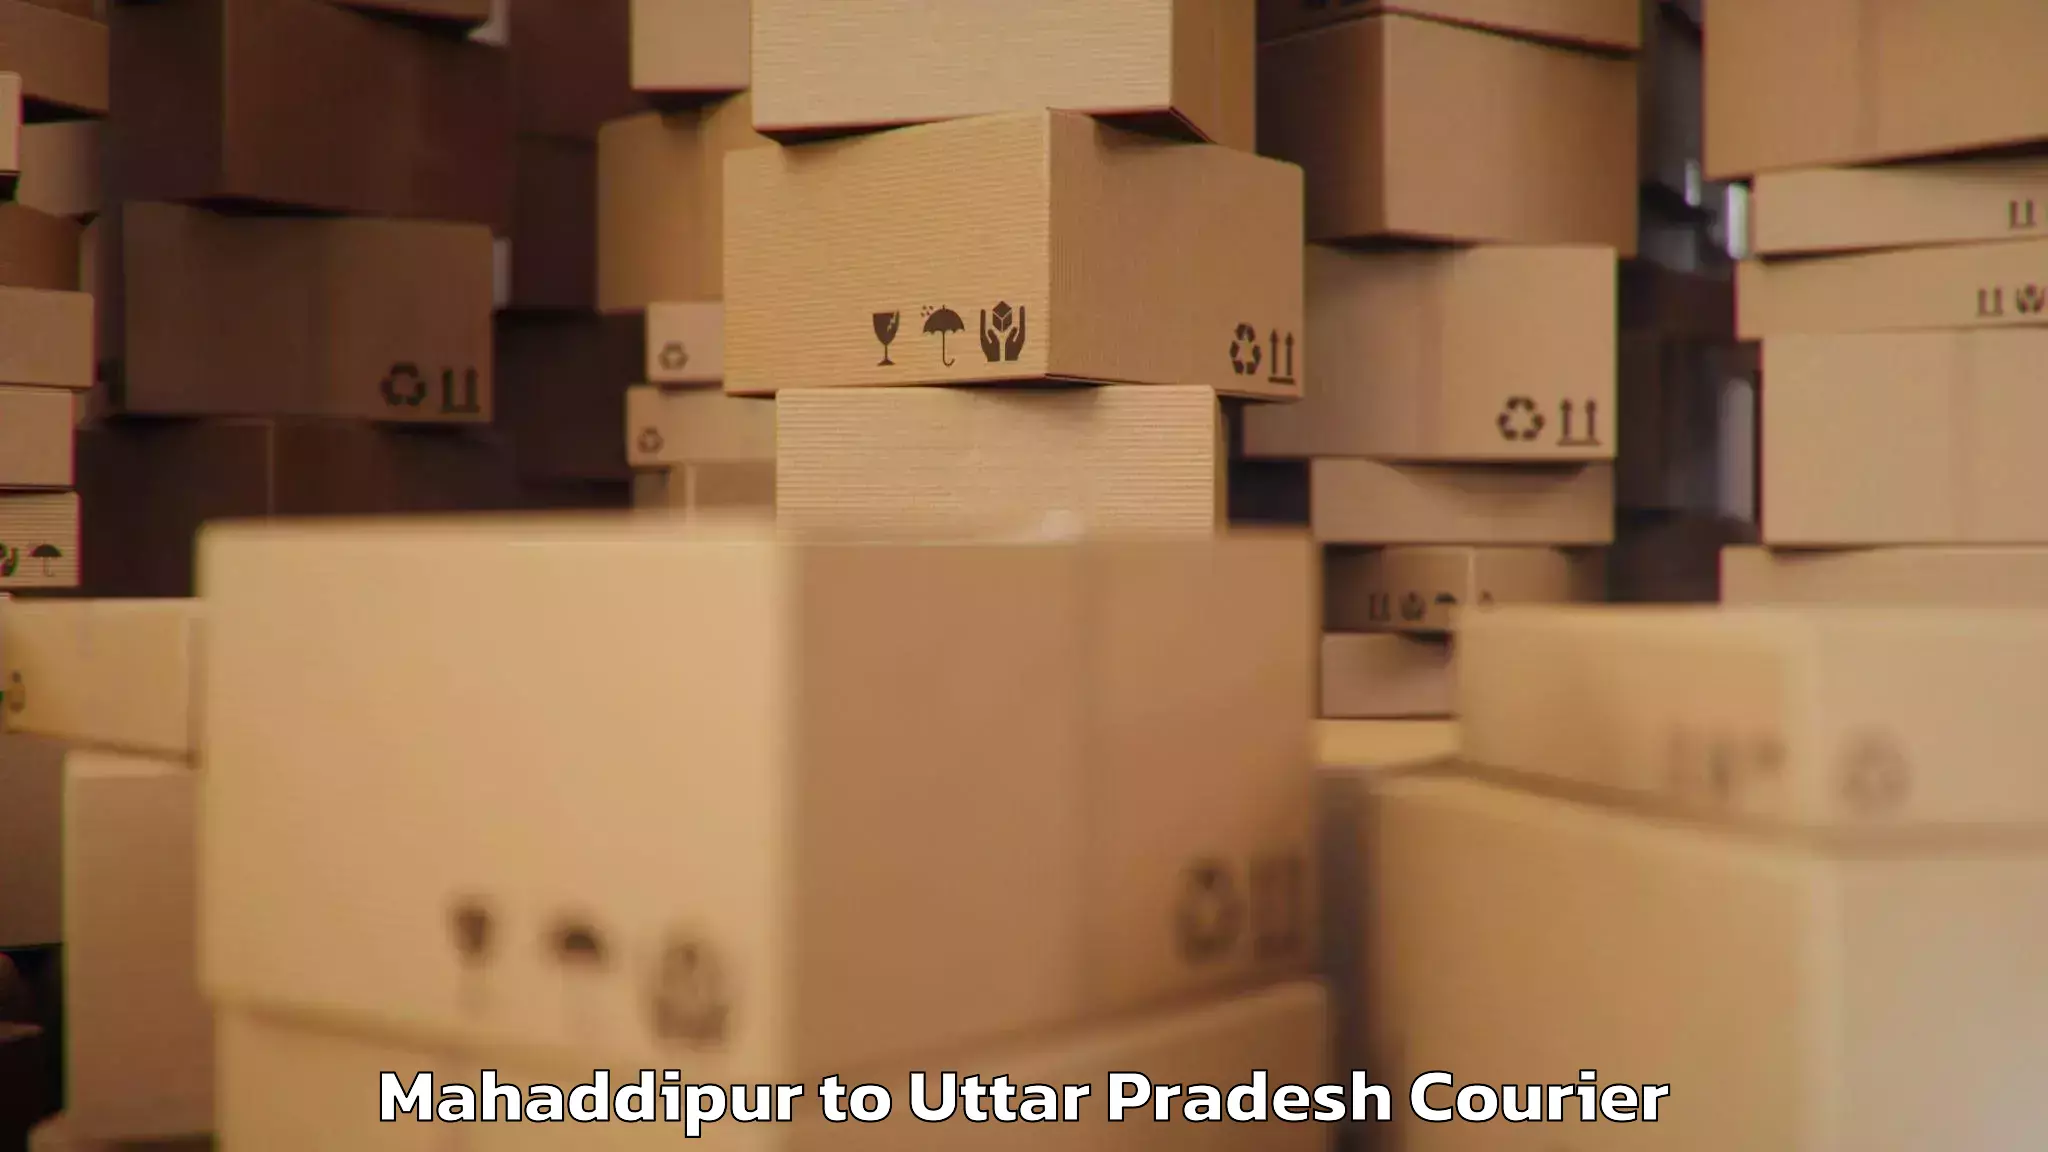 Emergency luggage shipping Mahaddipur to Agra